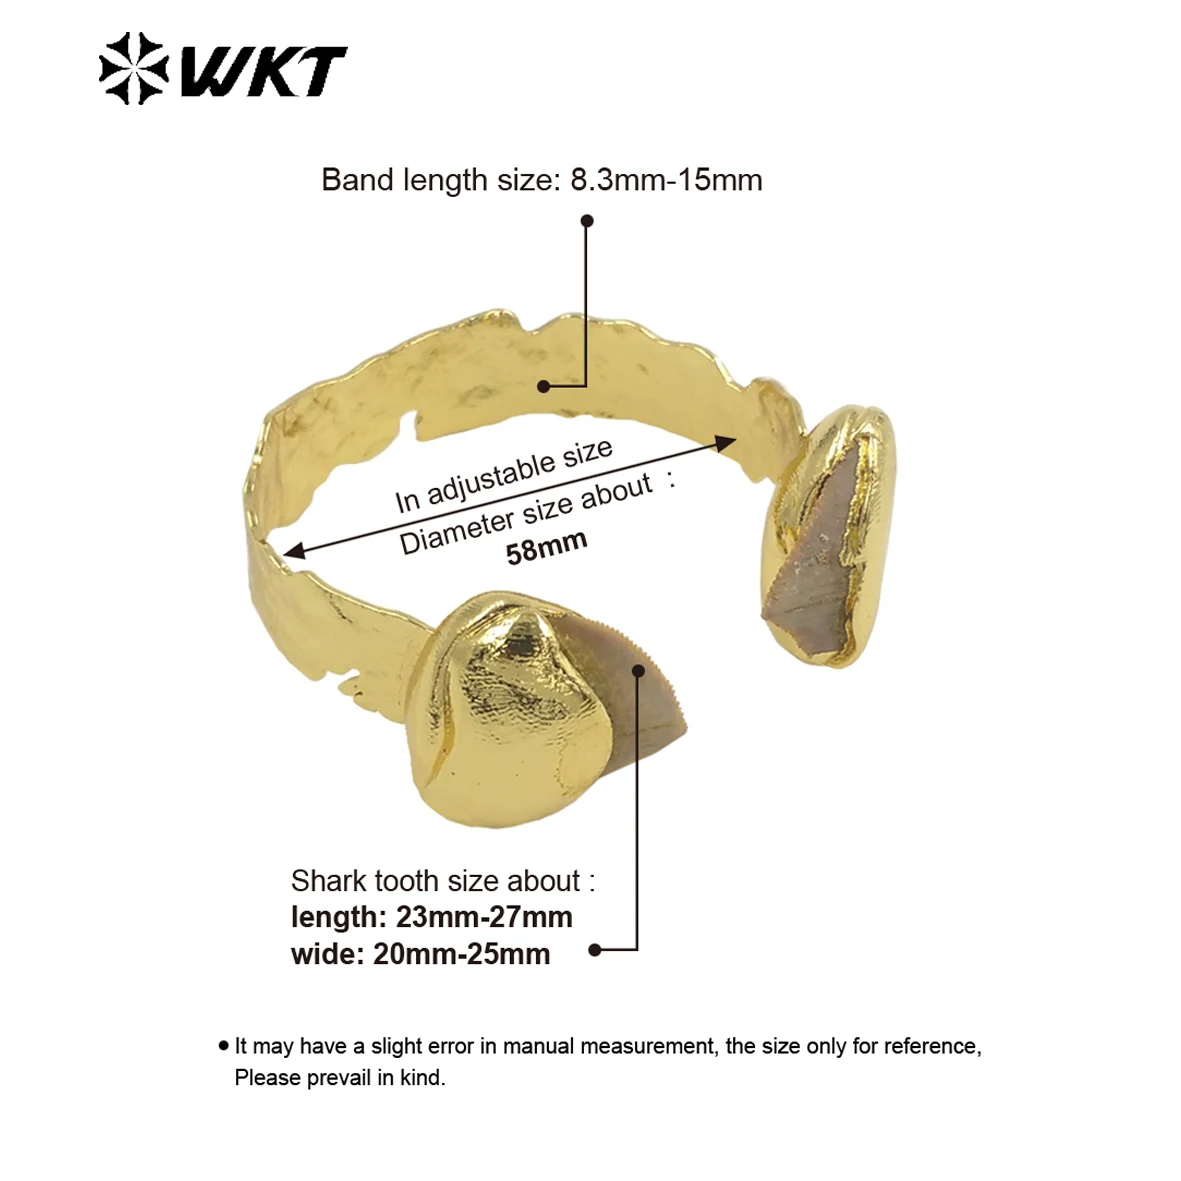 WT-B635 Удивительный WKT Эксклюзивный образец зубного браслета 18k с покрытием из настоящего золота INS, женский браслет в модном стиле, регулируемый Изображение 5